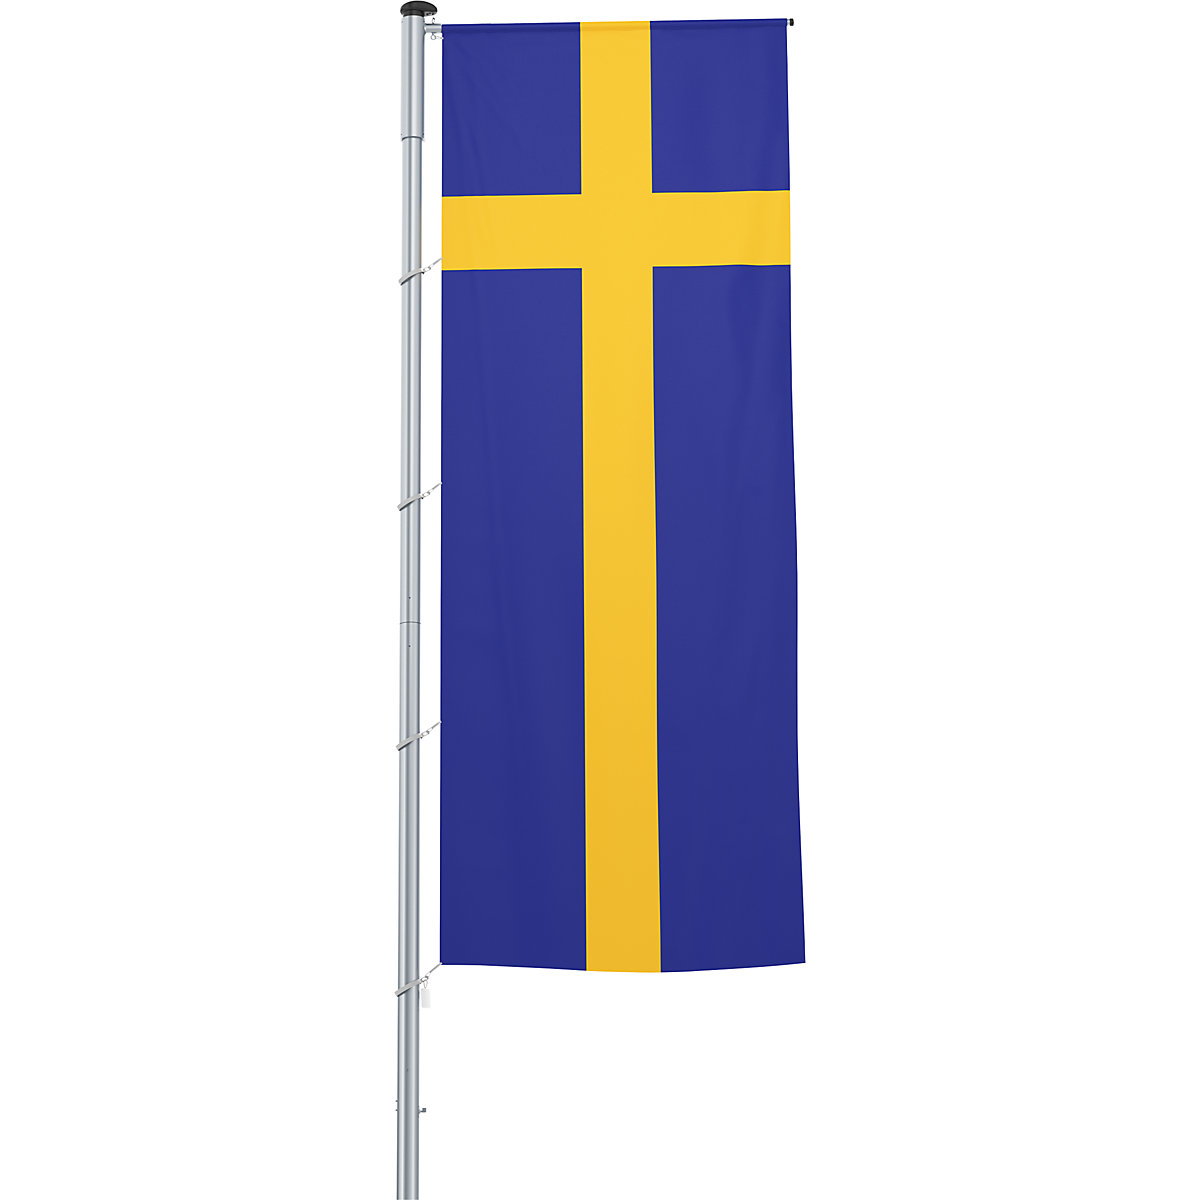 Vlajka na pozdĺžne upevnenie na stožiar/národná vlajka – Mannus, formát 1,2 x 3 m, Švédsko-12